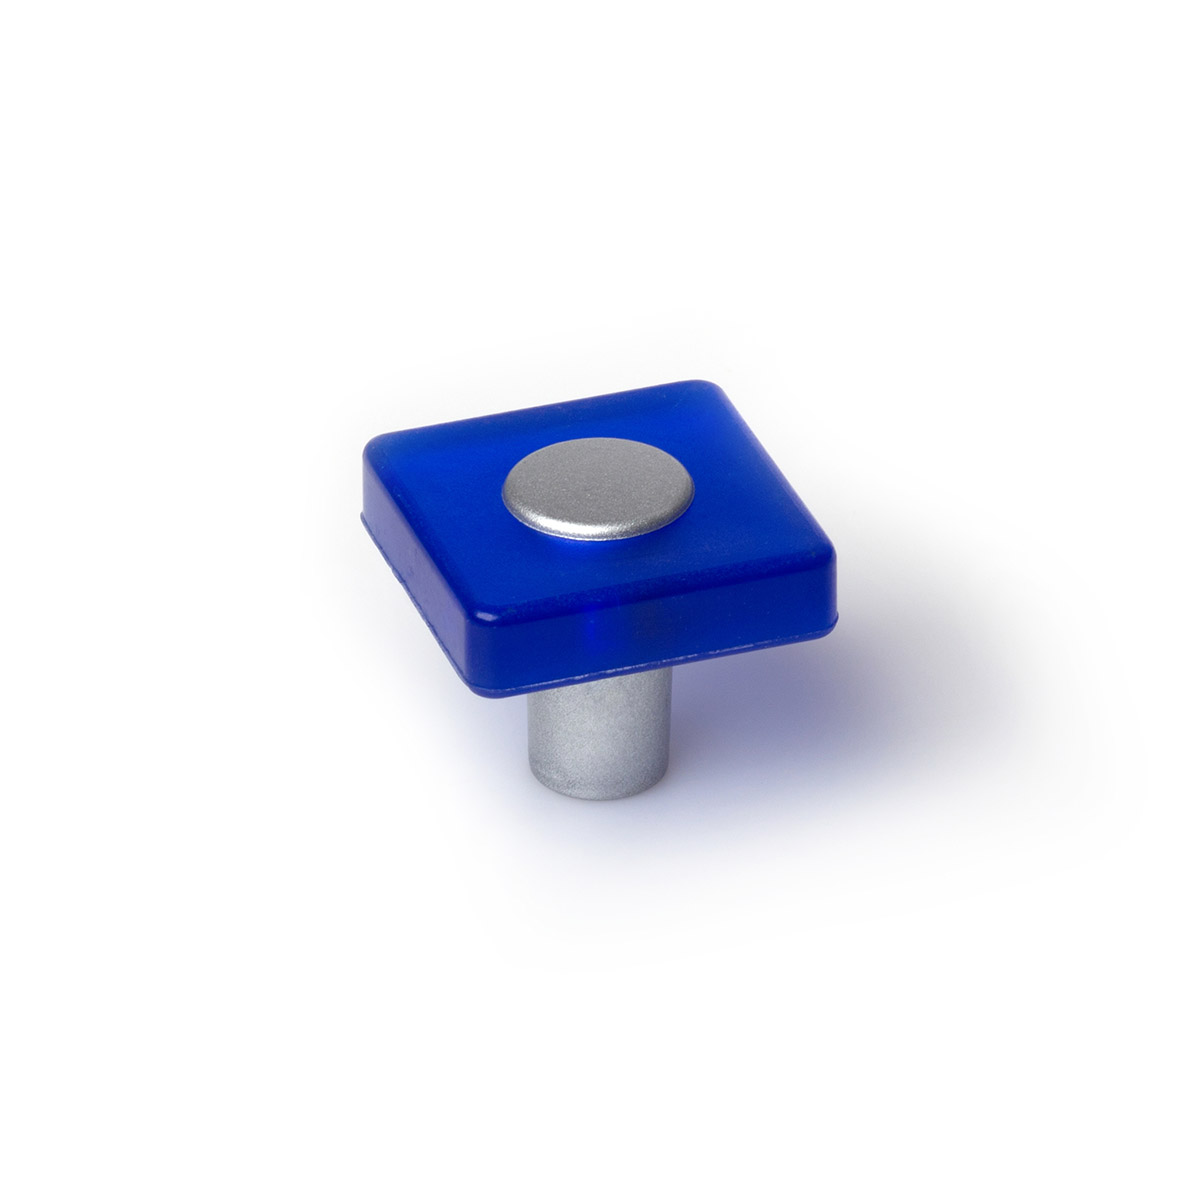 Bouton en plastique avec finition bleue, dimensions: 30x30x26mm